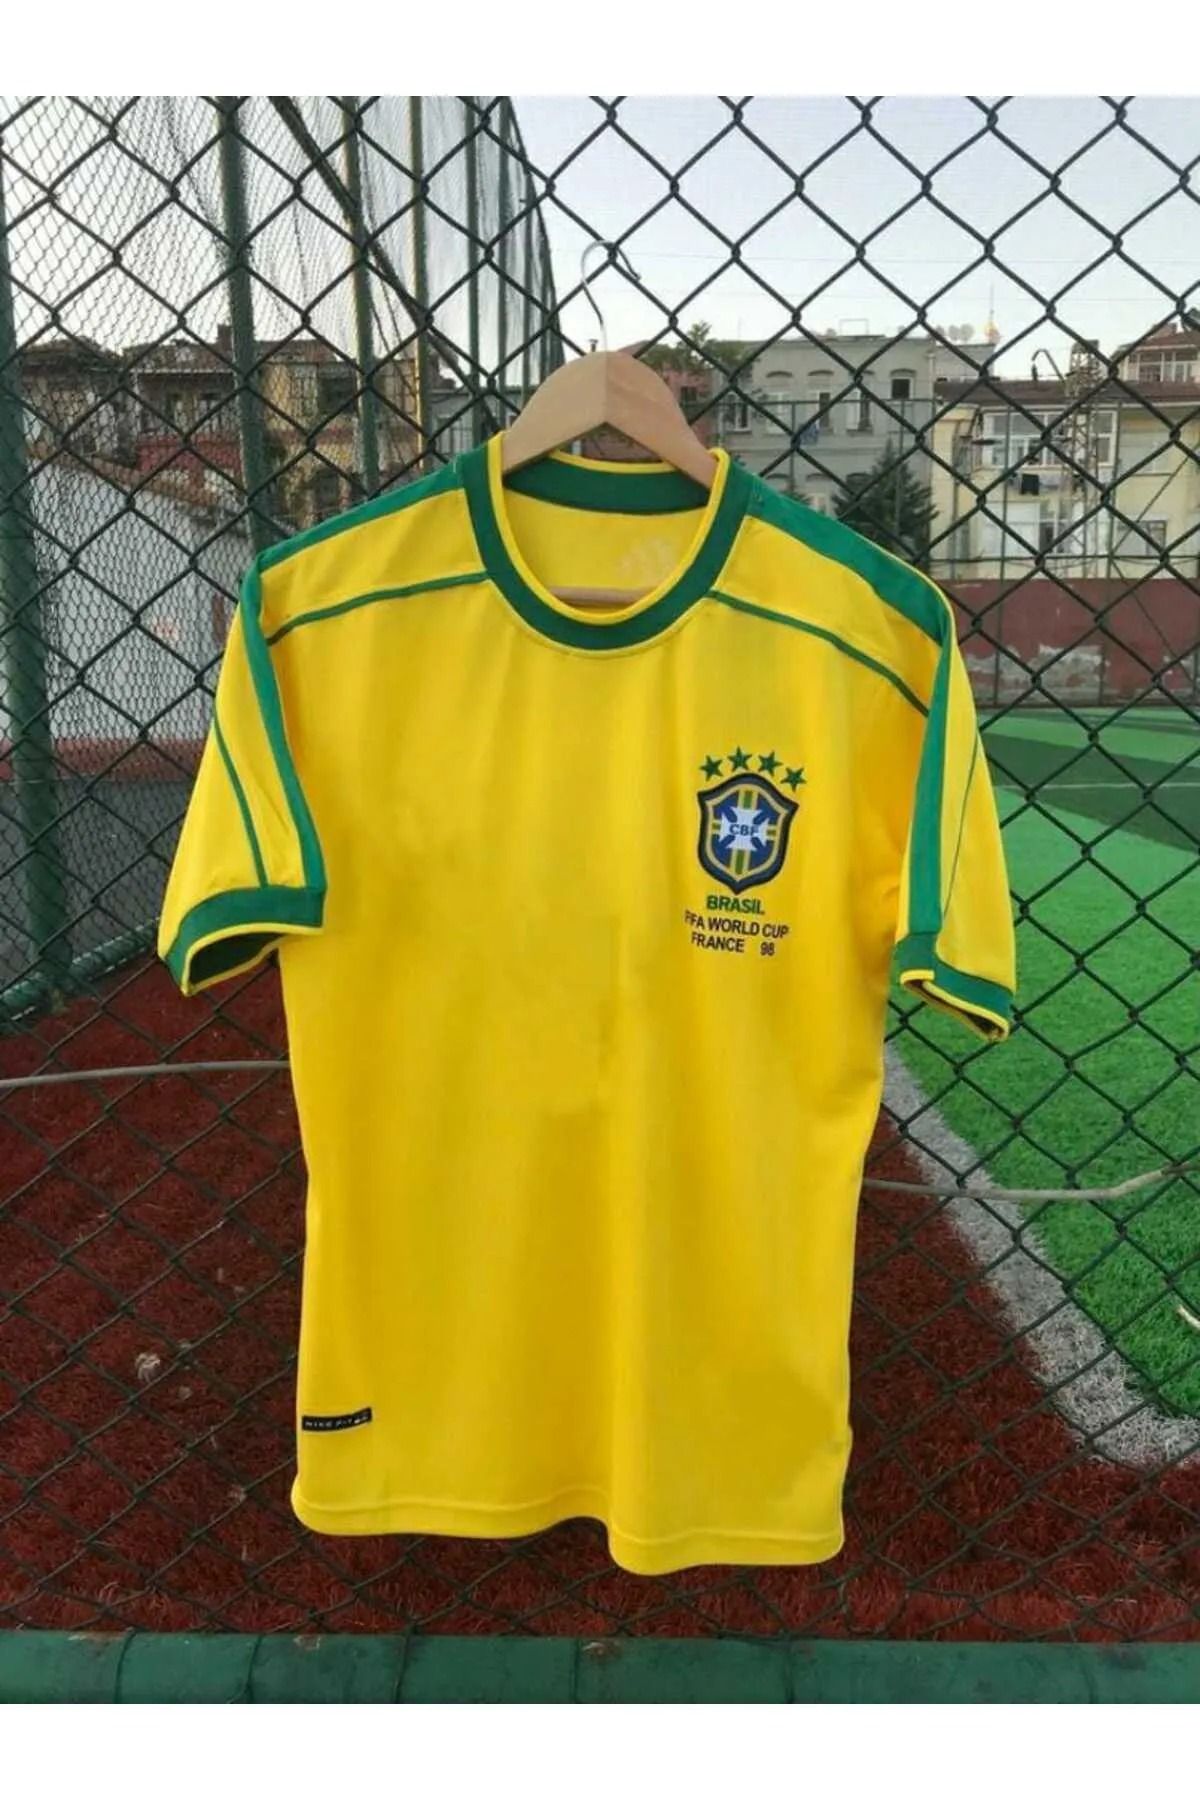 AJAX STAR Brezilya Milli Takımı 98 Dünya Kupası Rivaldo Nostalji Forması